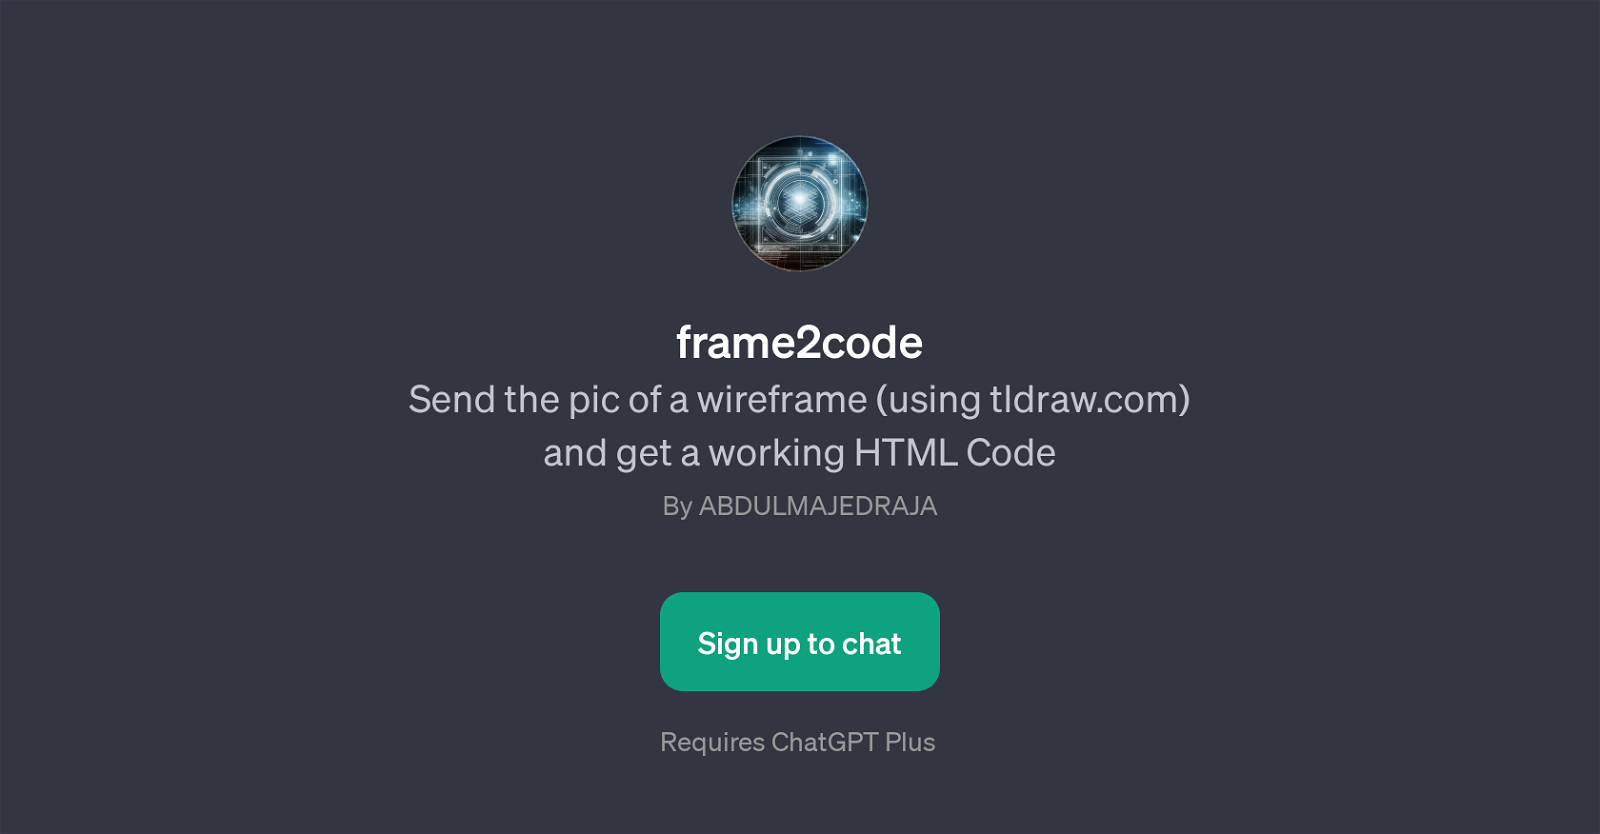 frame2code website